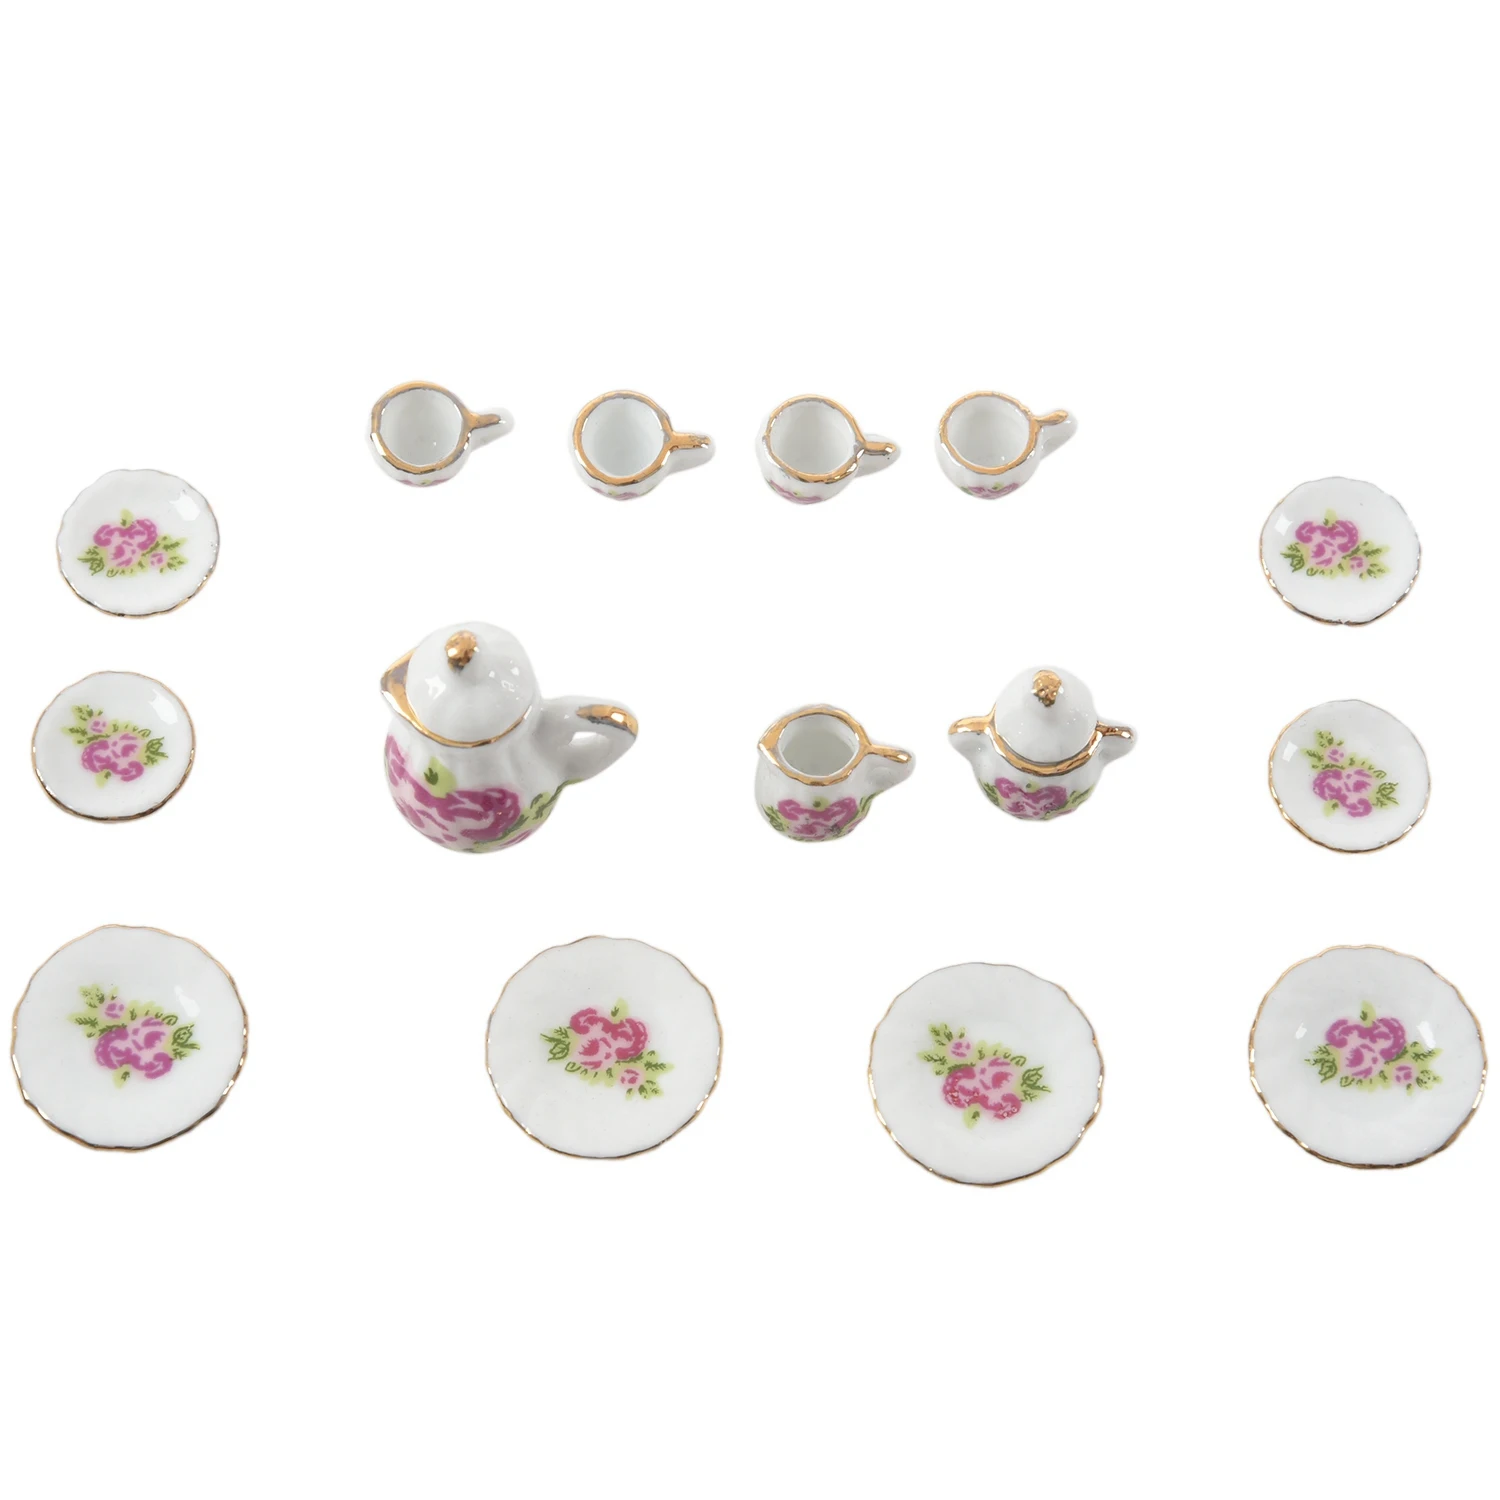 

15 фарфоровый набор из… предметов чайный набор, миниатюрная еда для кукольного домика, китайская Роза